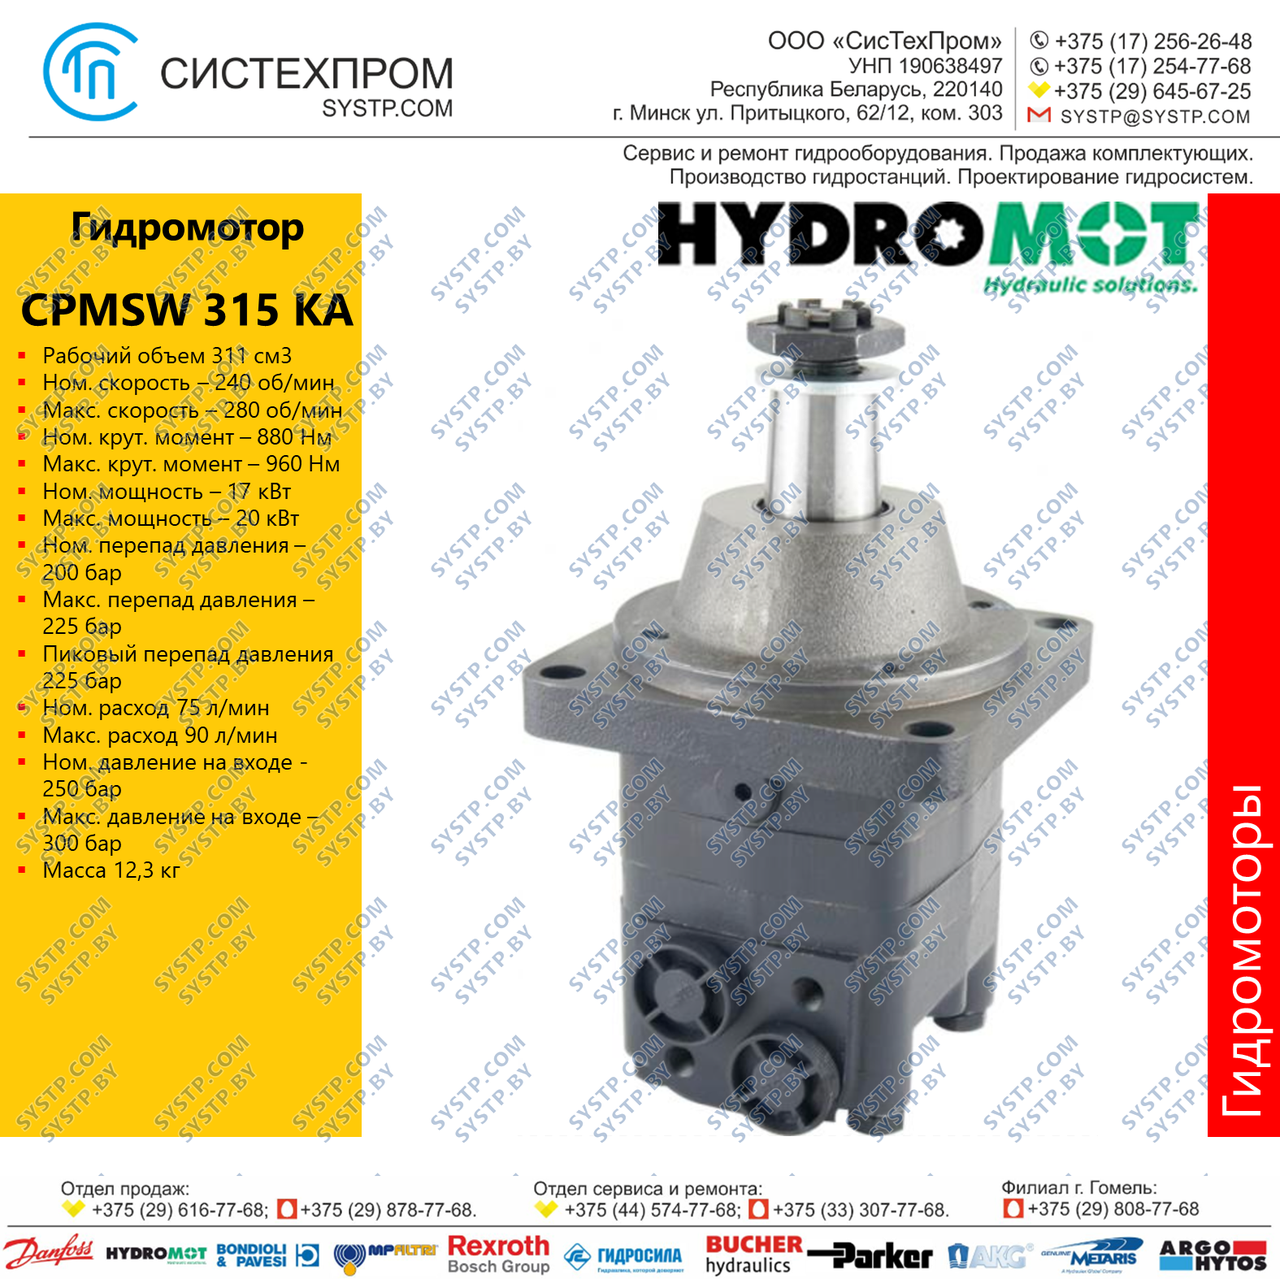 Гидромотор CPMSW315KА